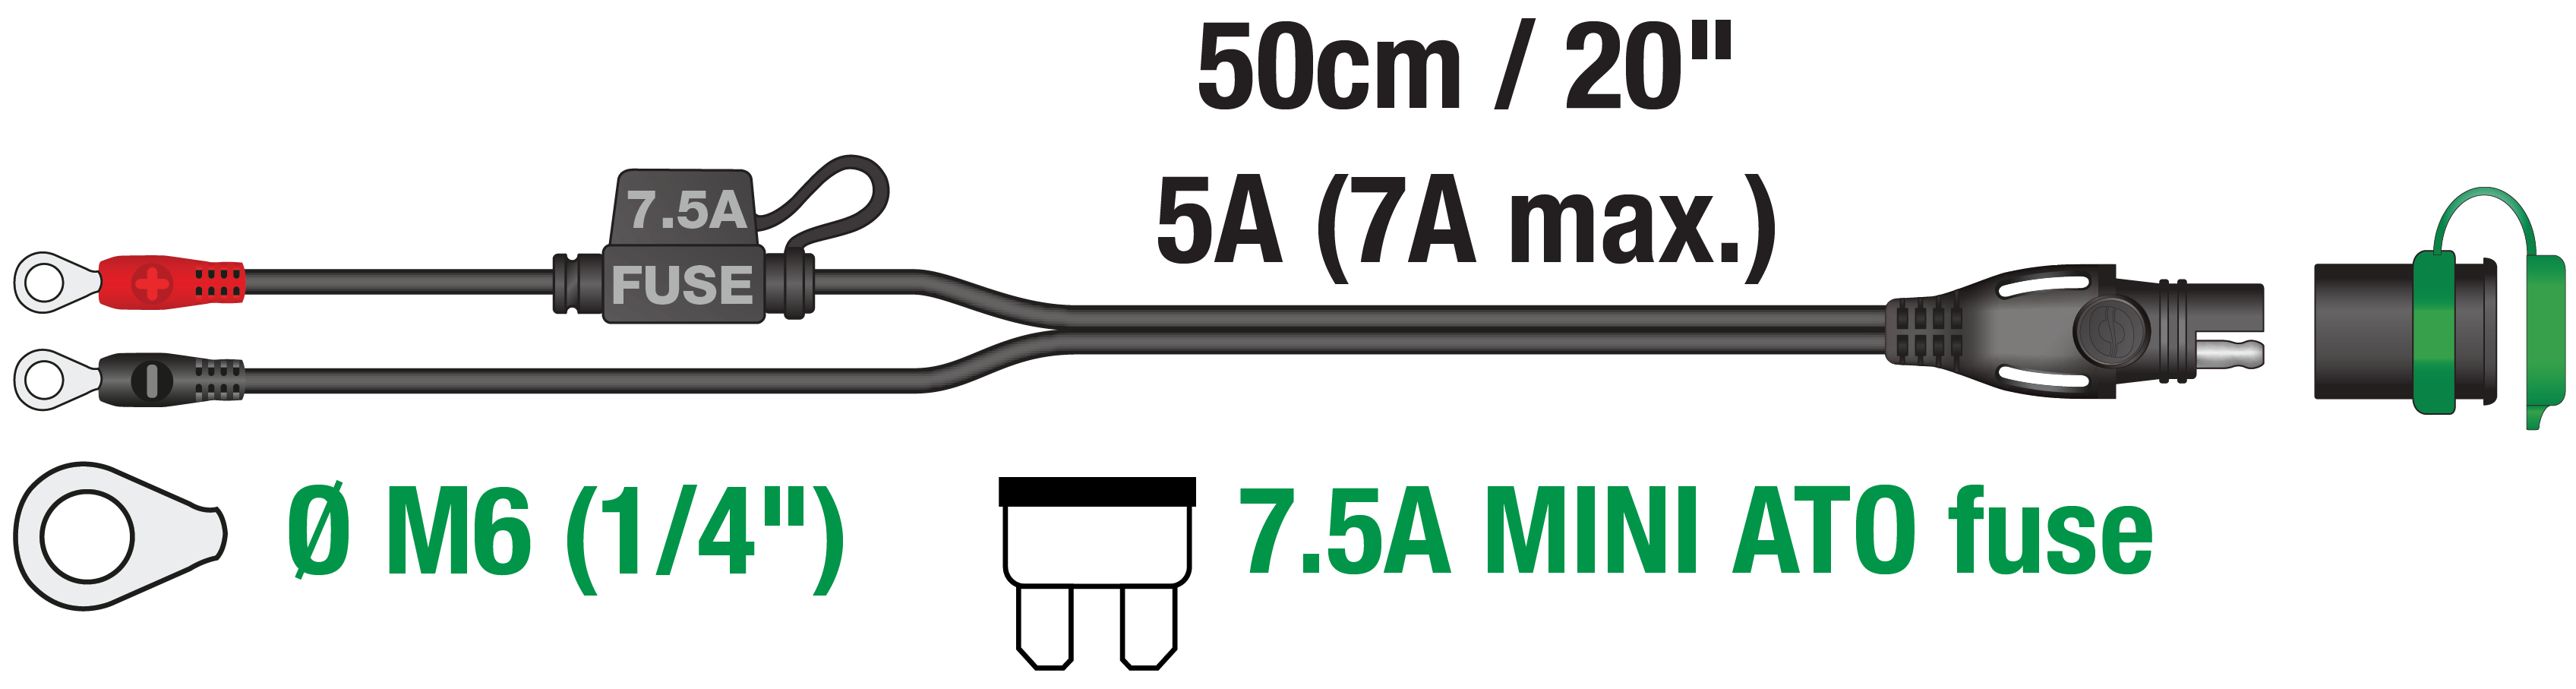 rizos que se ajustan perfectamente a los terminales de la batería deportiva de energía de litio con un fusible de 7,5 A que protege el cable y la electrónica con clasificación de -40°